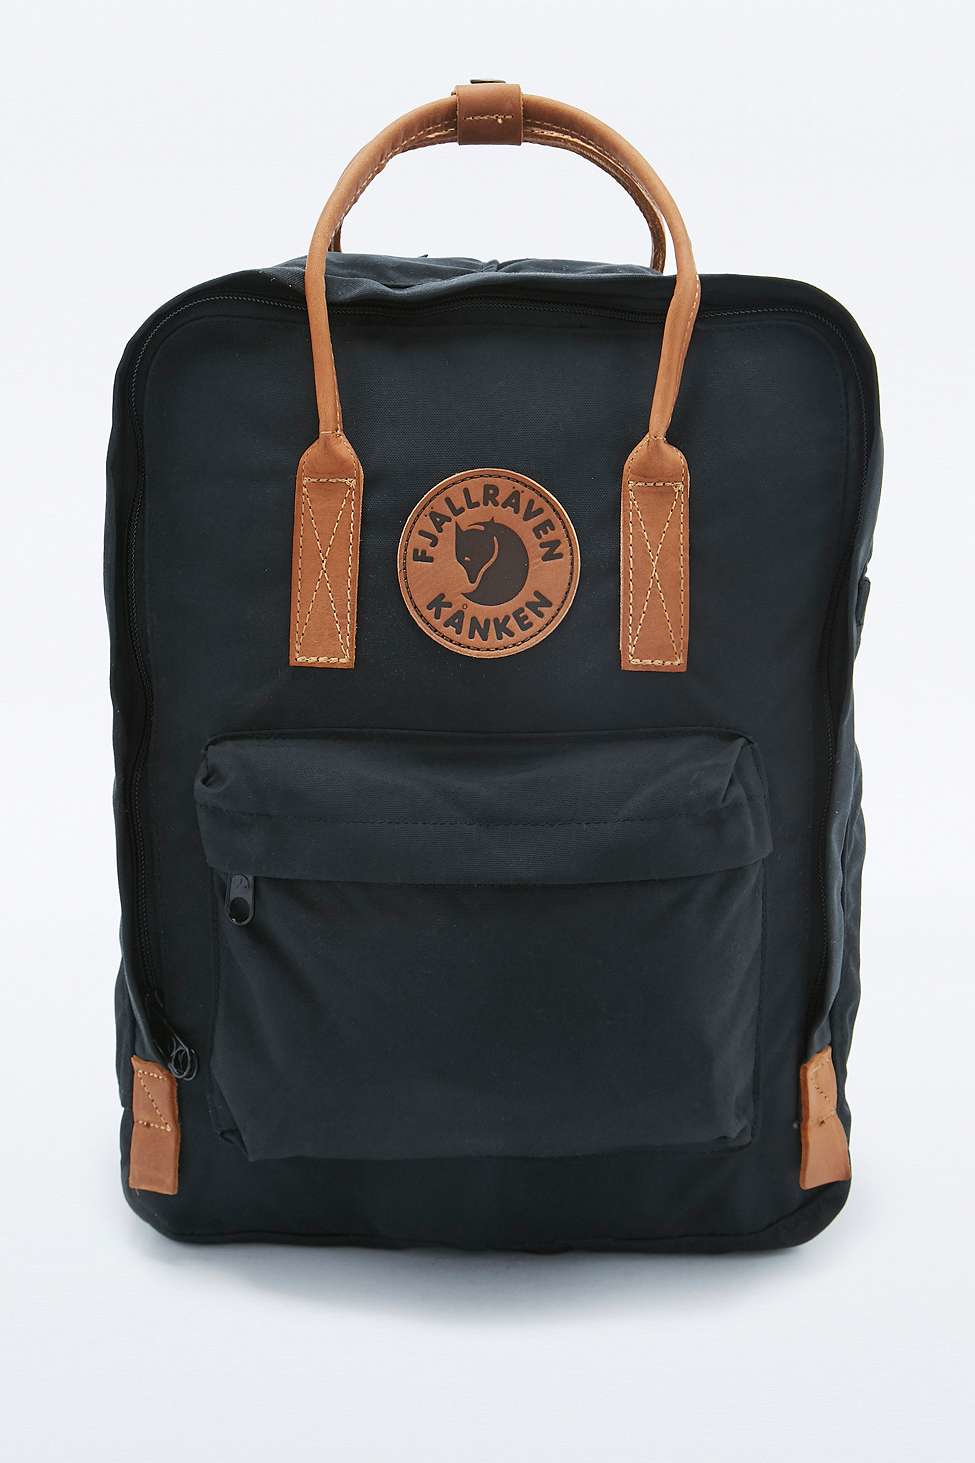 Lyst - Fjallraven Kanken No. 2 Black And Leather Backpack in Black